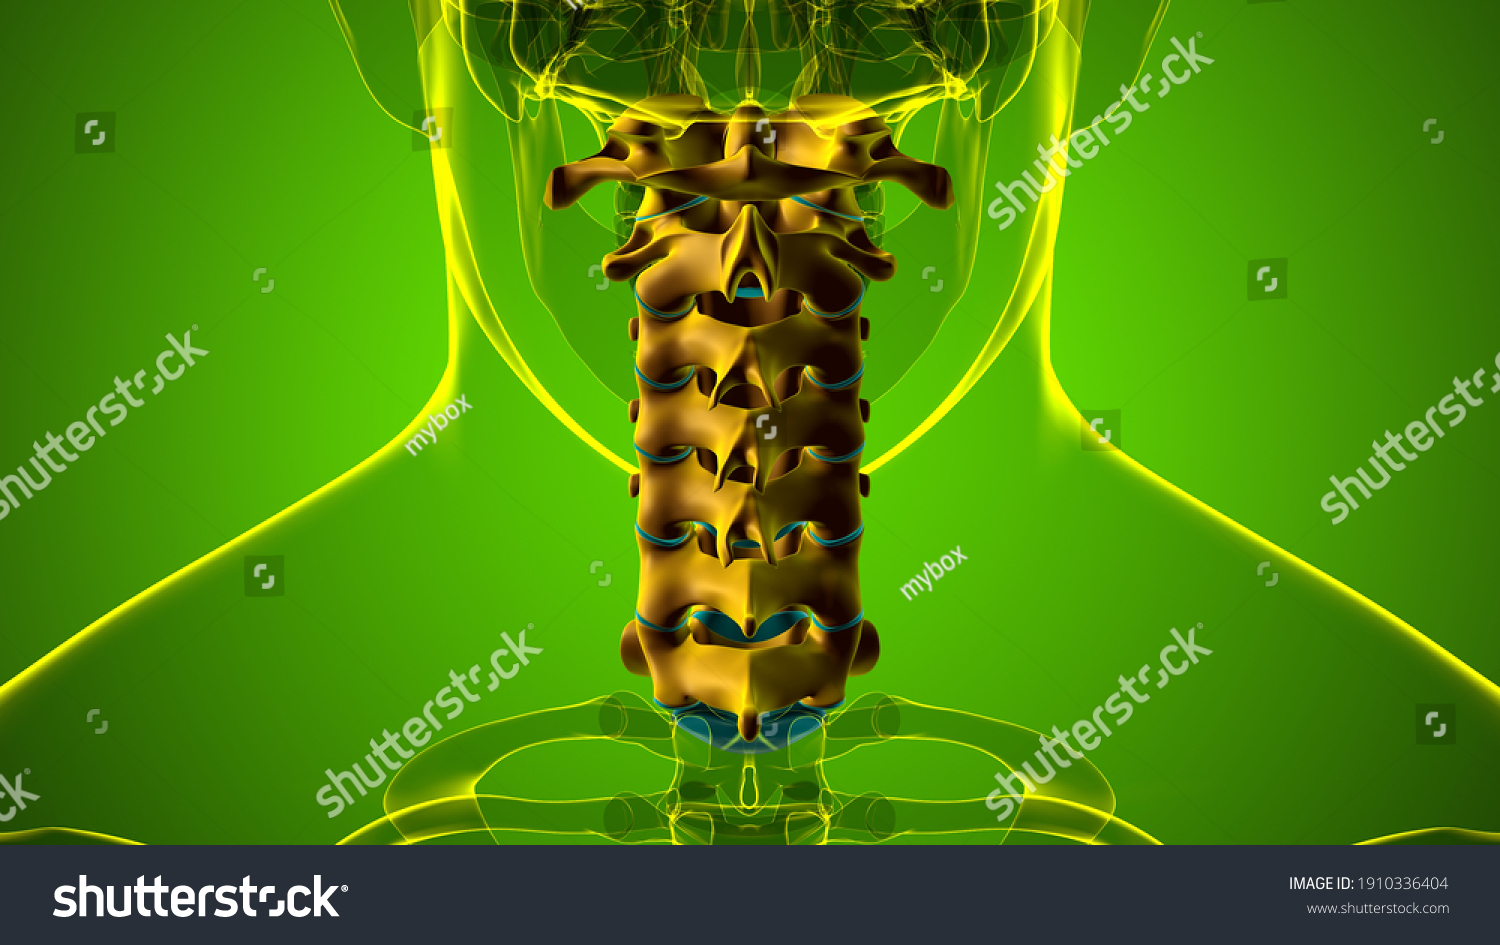 Human Skeleton Vertebral Column Cervical Vertebrae Stock Illustration 1910336404 4597